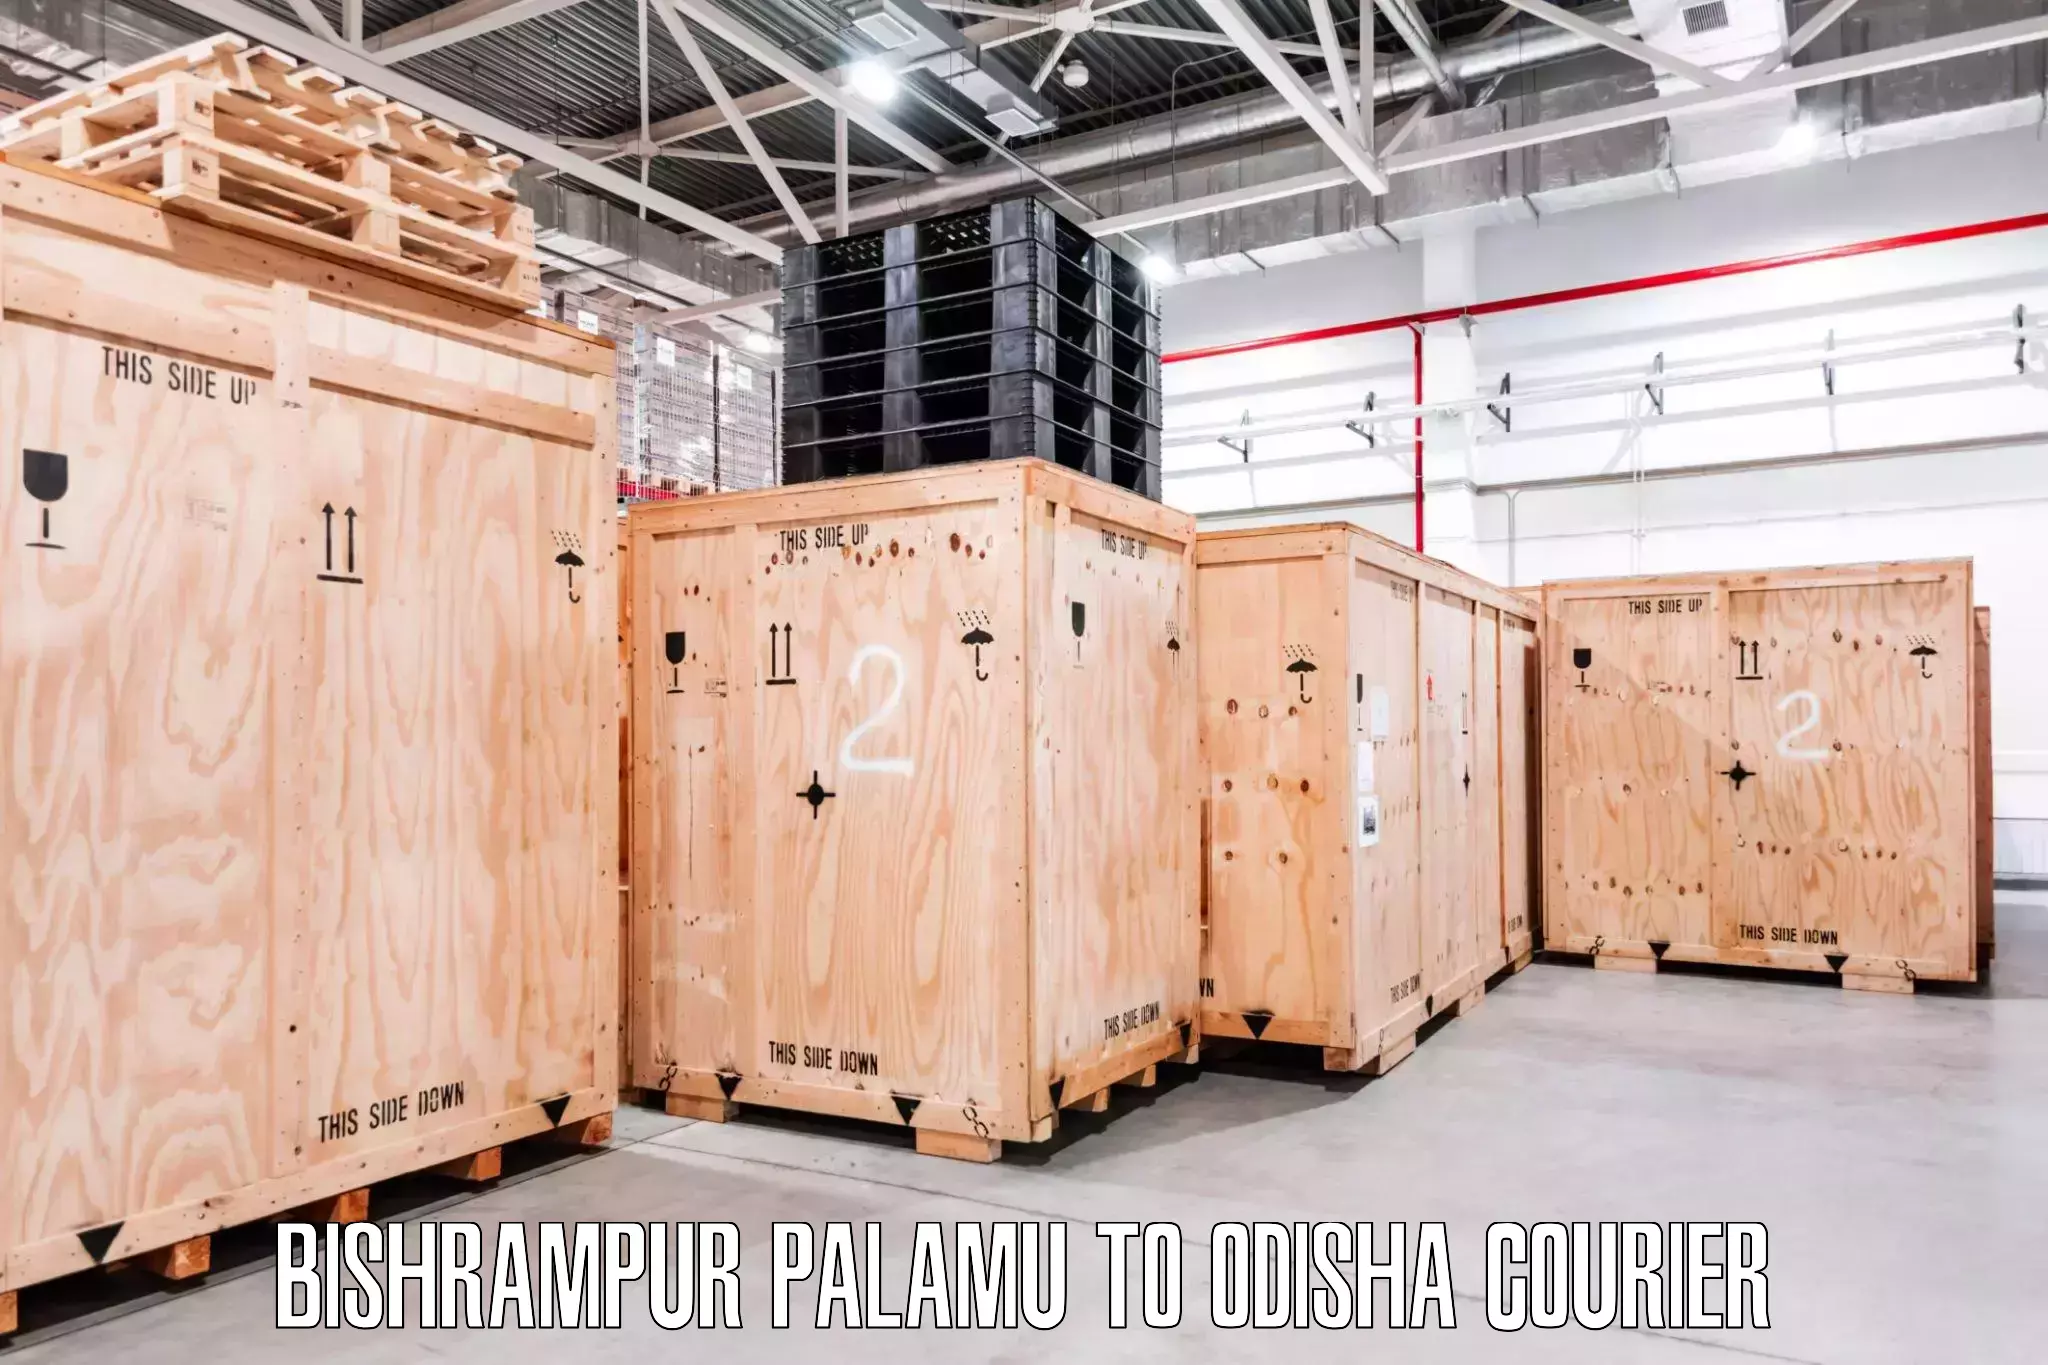 Furniture moving experts Bishrampur Palamu to Baleswar